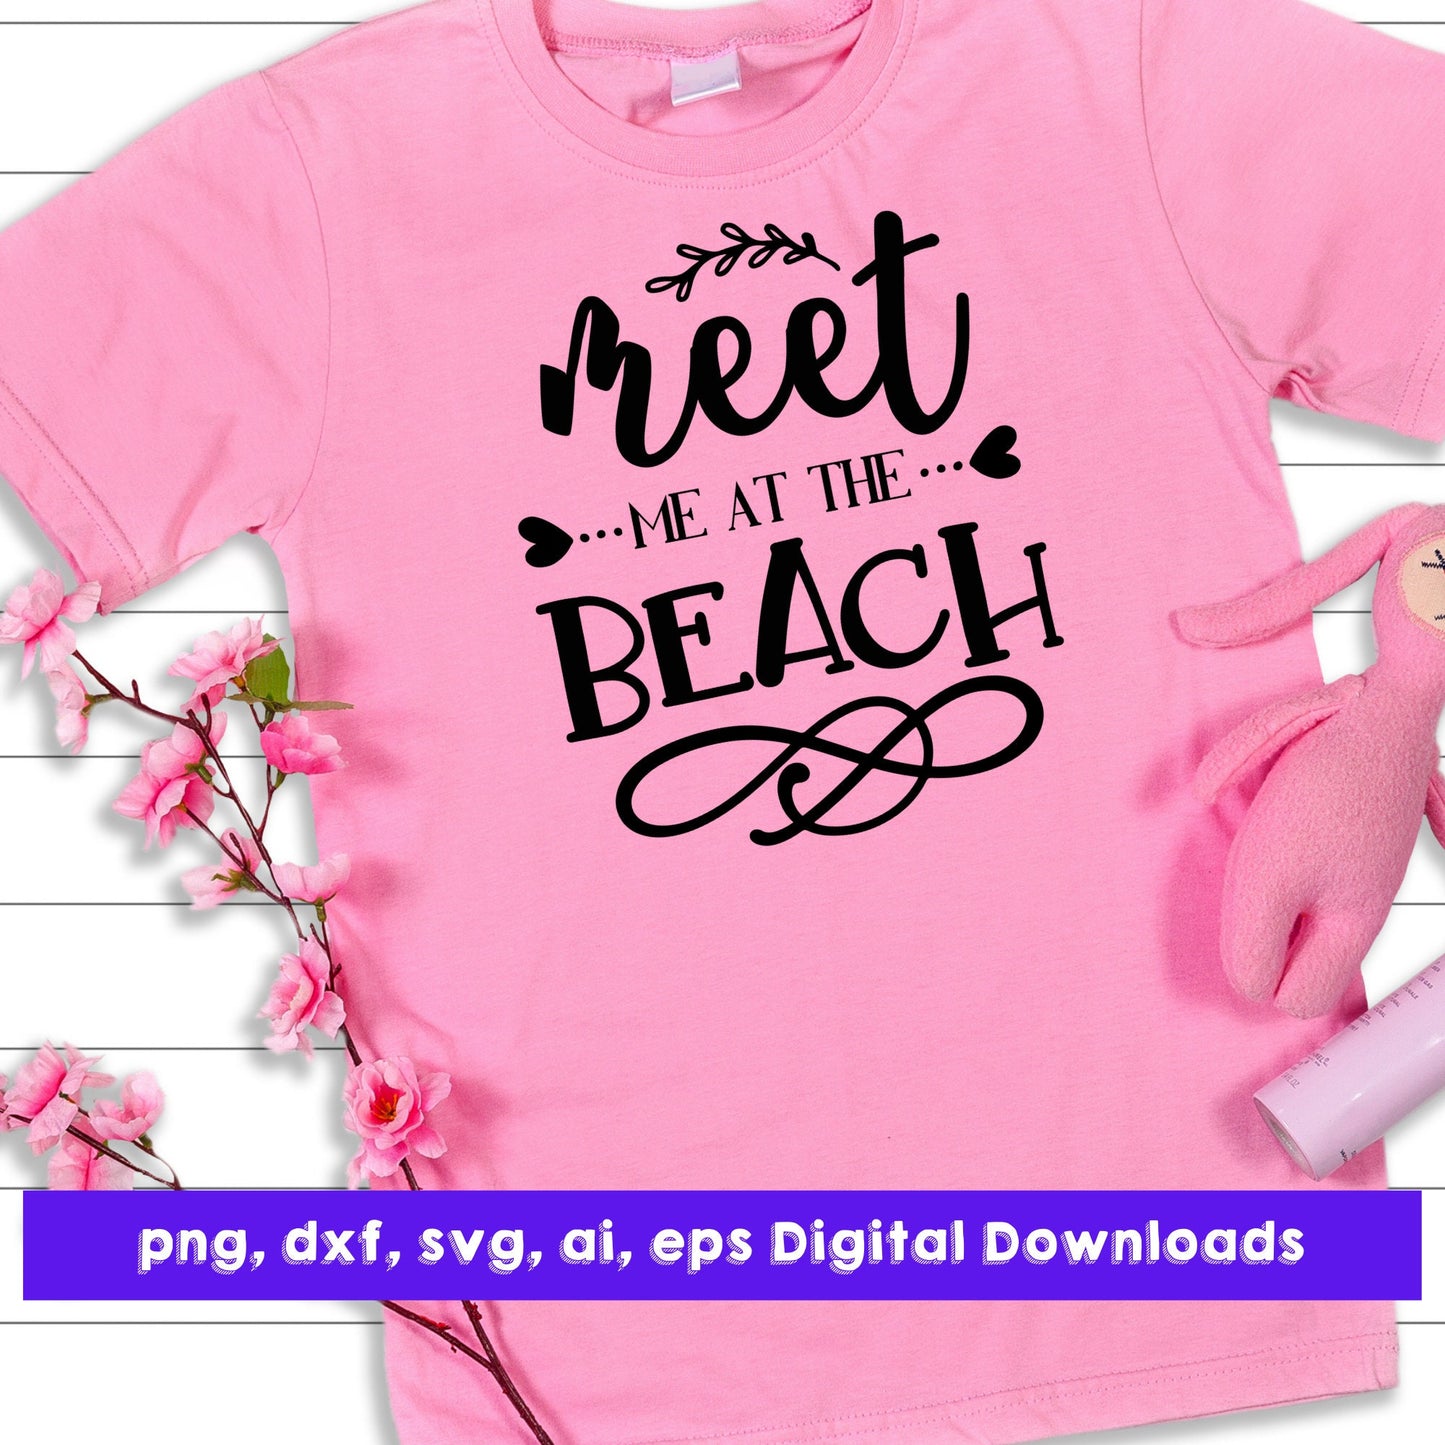 Meet Me At The Beach